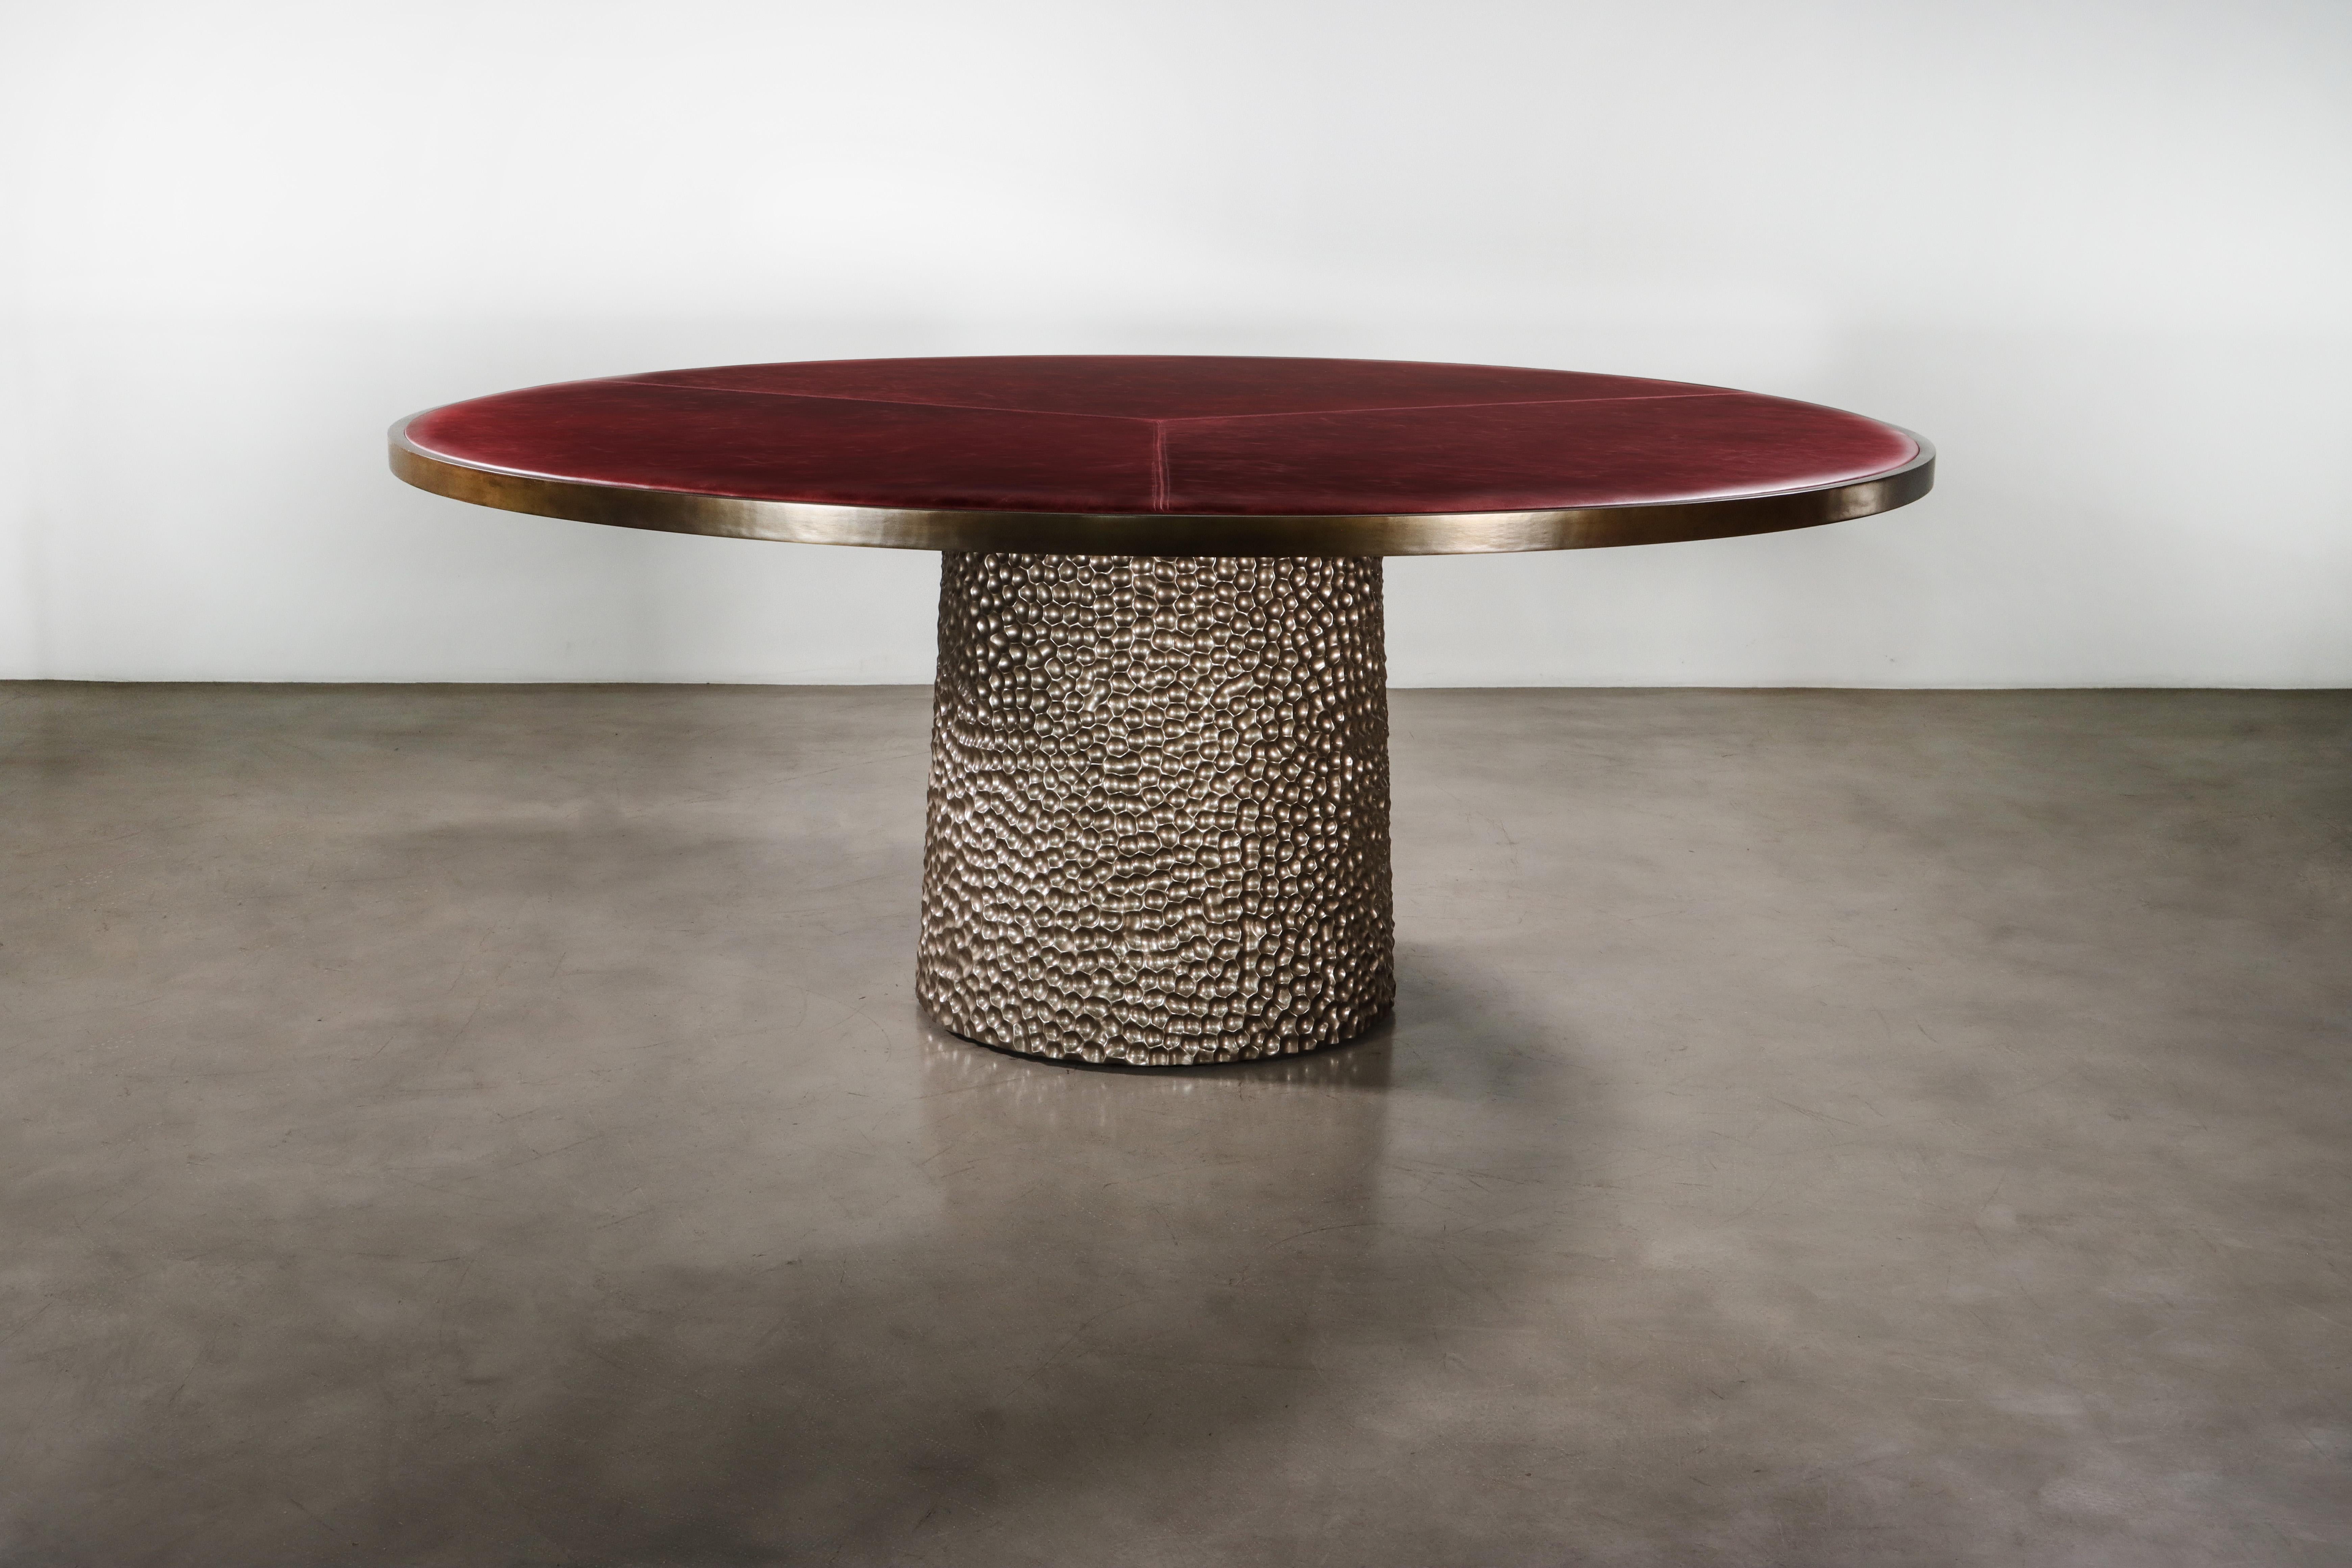 Der Giada Tisch verfügt über eine gepolsterte Platte aus Stoff oder Leder Ihrer Wahl mit einer eleganten Bronzeverzierung und einem handgeschnitzten Holzsockel, hier in einer Metallic-Ausführung.  

Die Maße sind 72